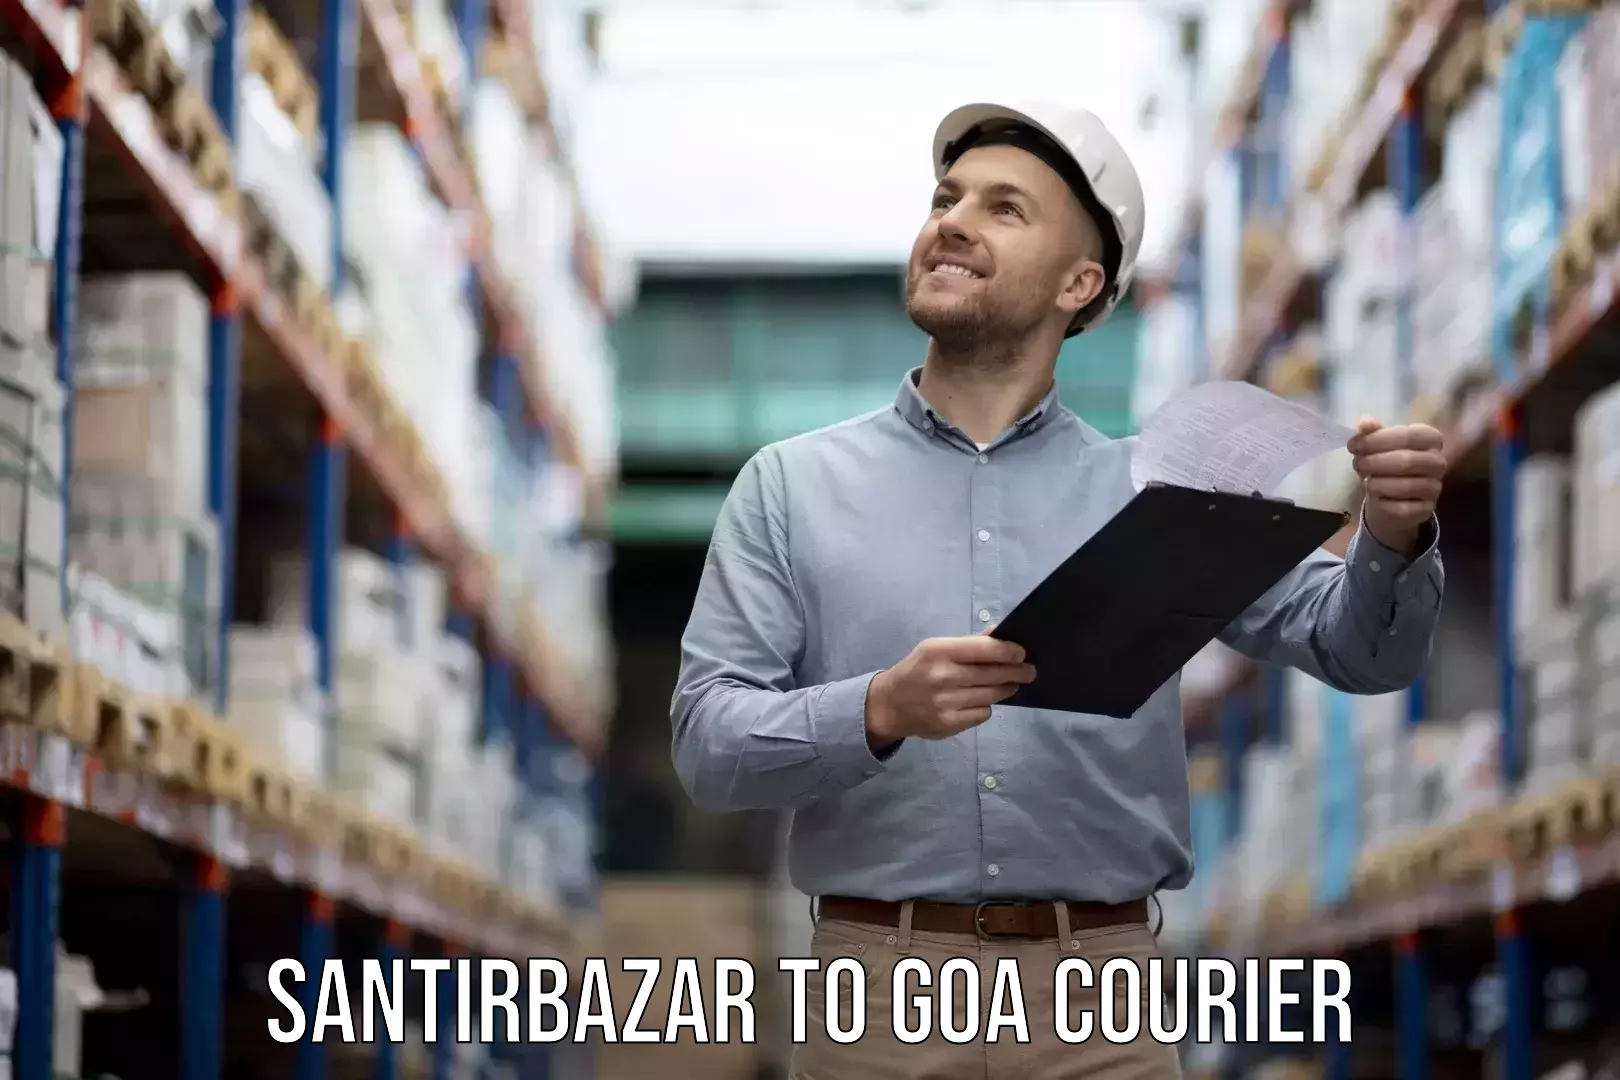 Quick furniture moving Santirbazar to Goa